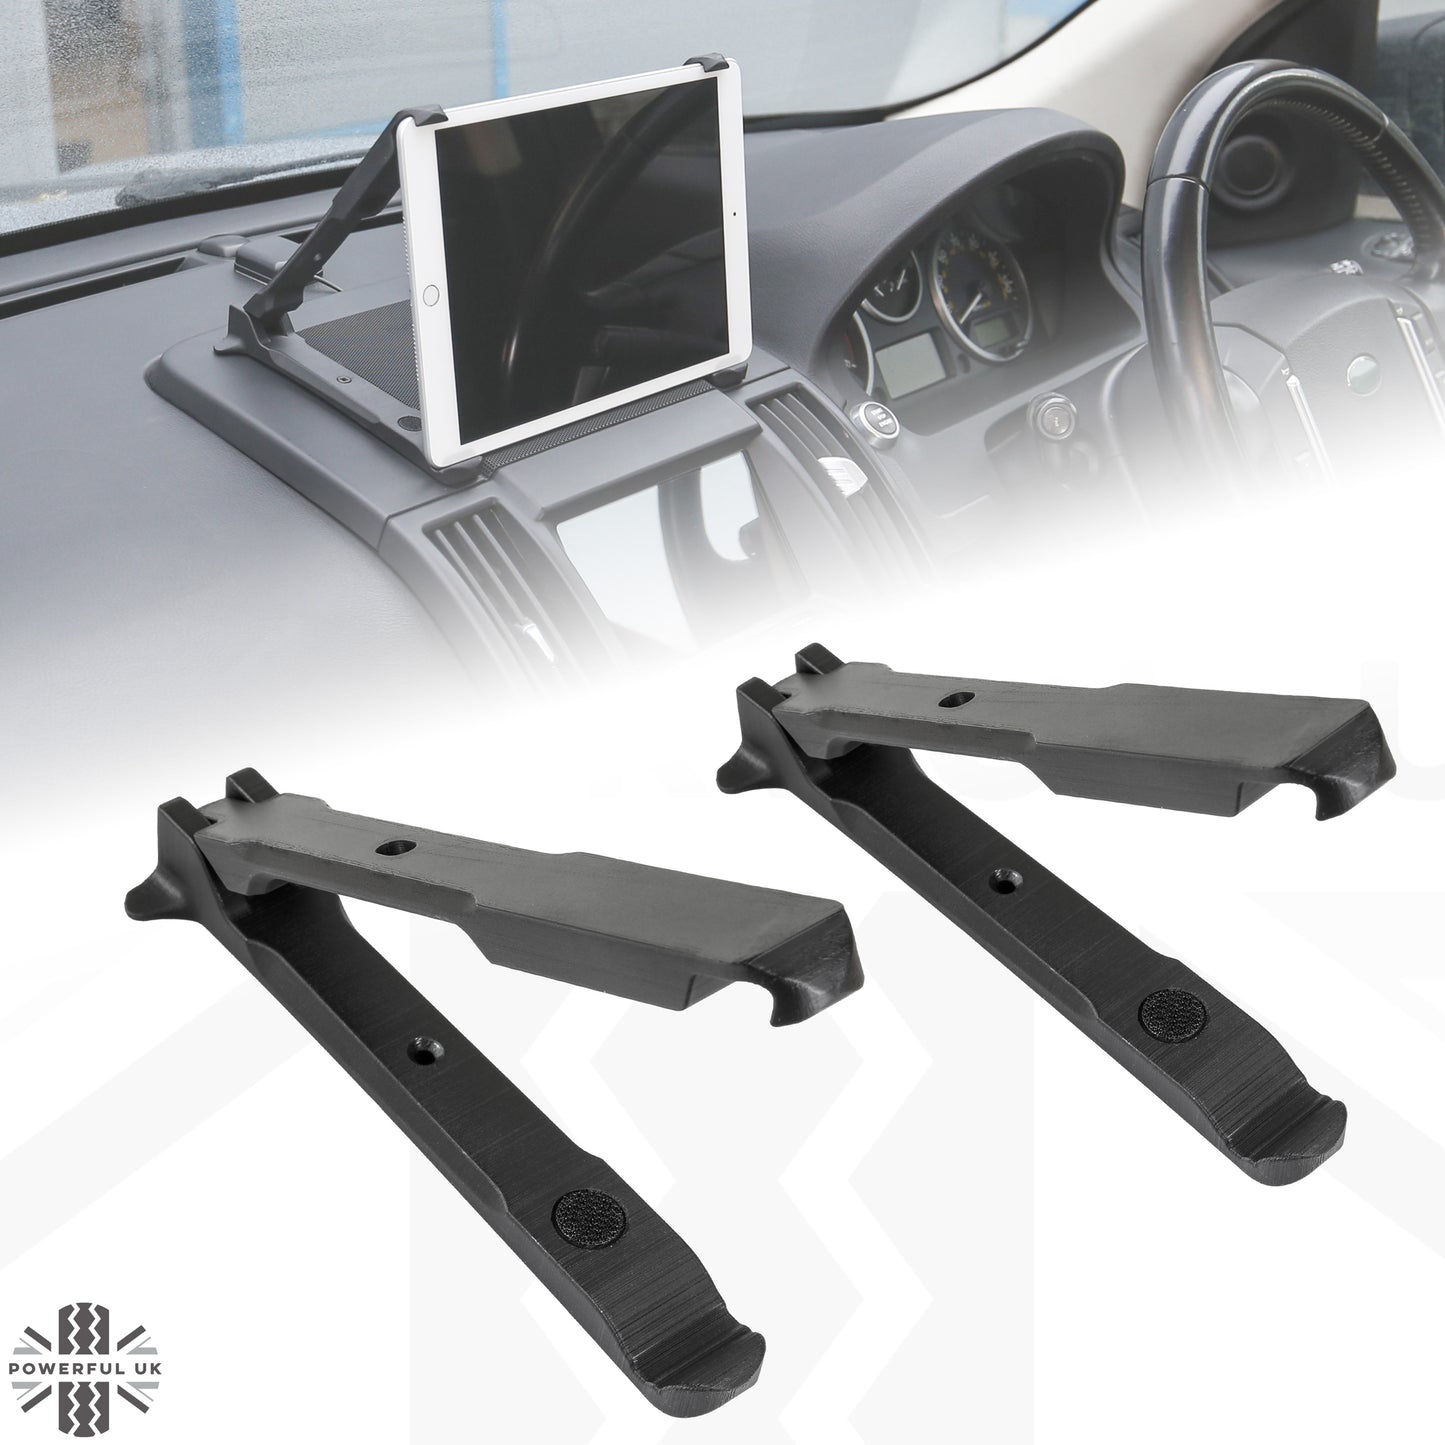 iPad Dash Mounting Kit for Land Rover Freelander 2 (2007-11)